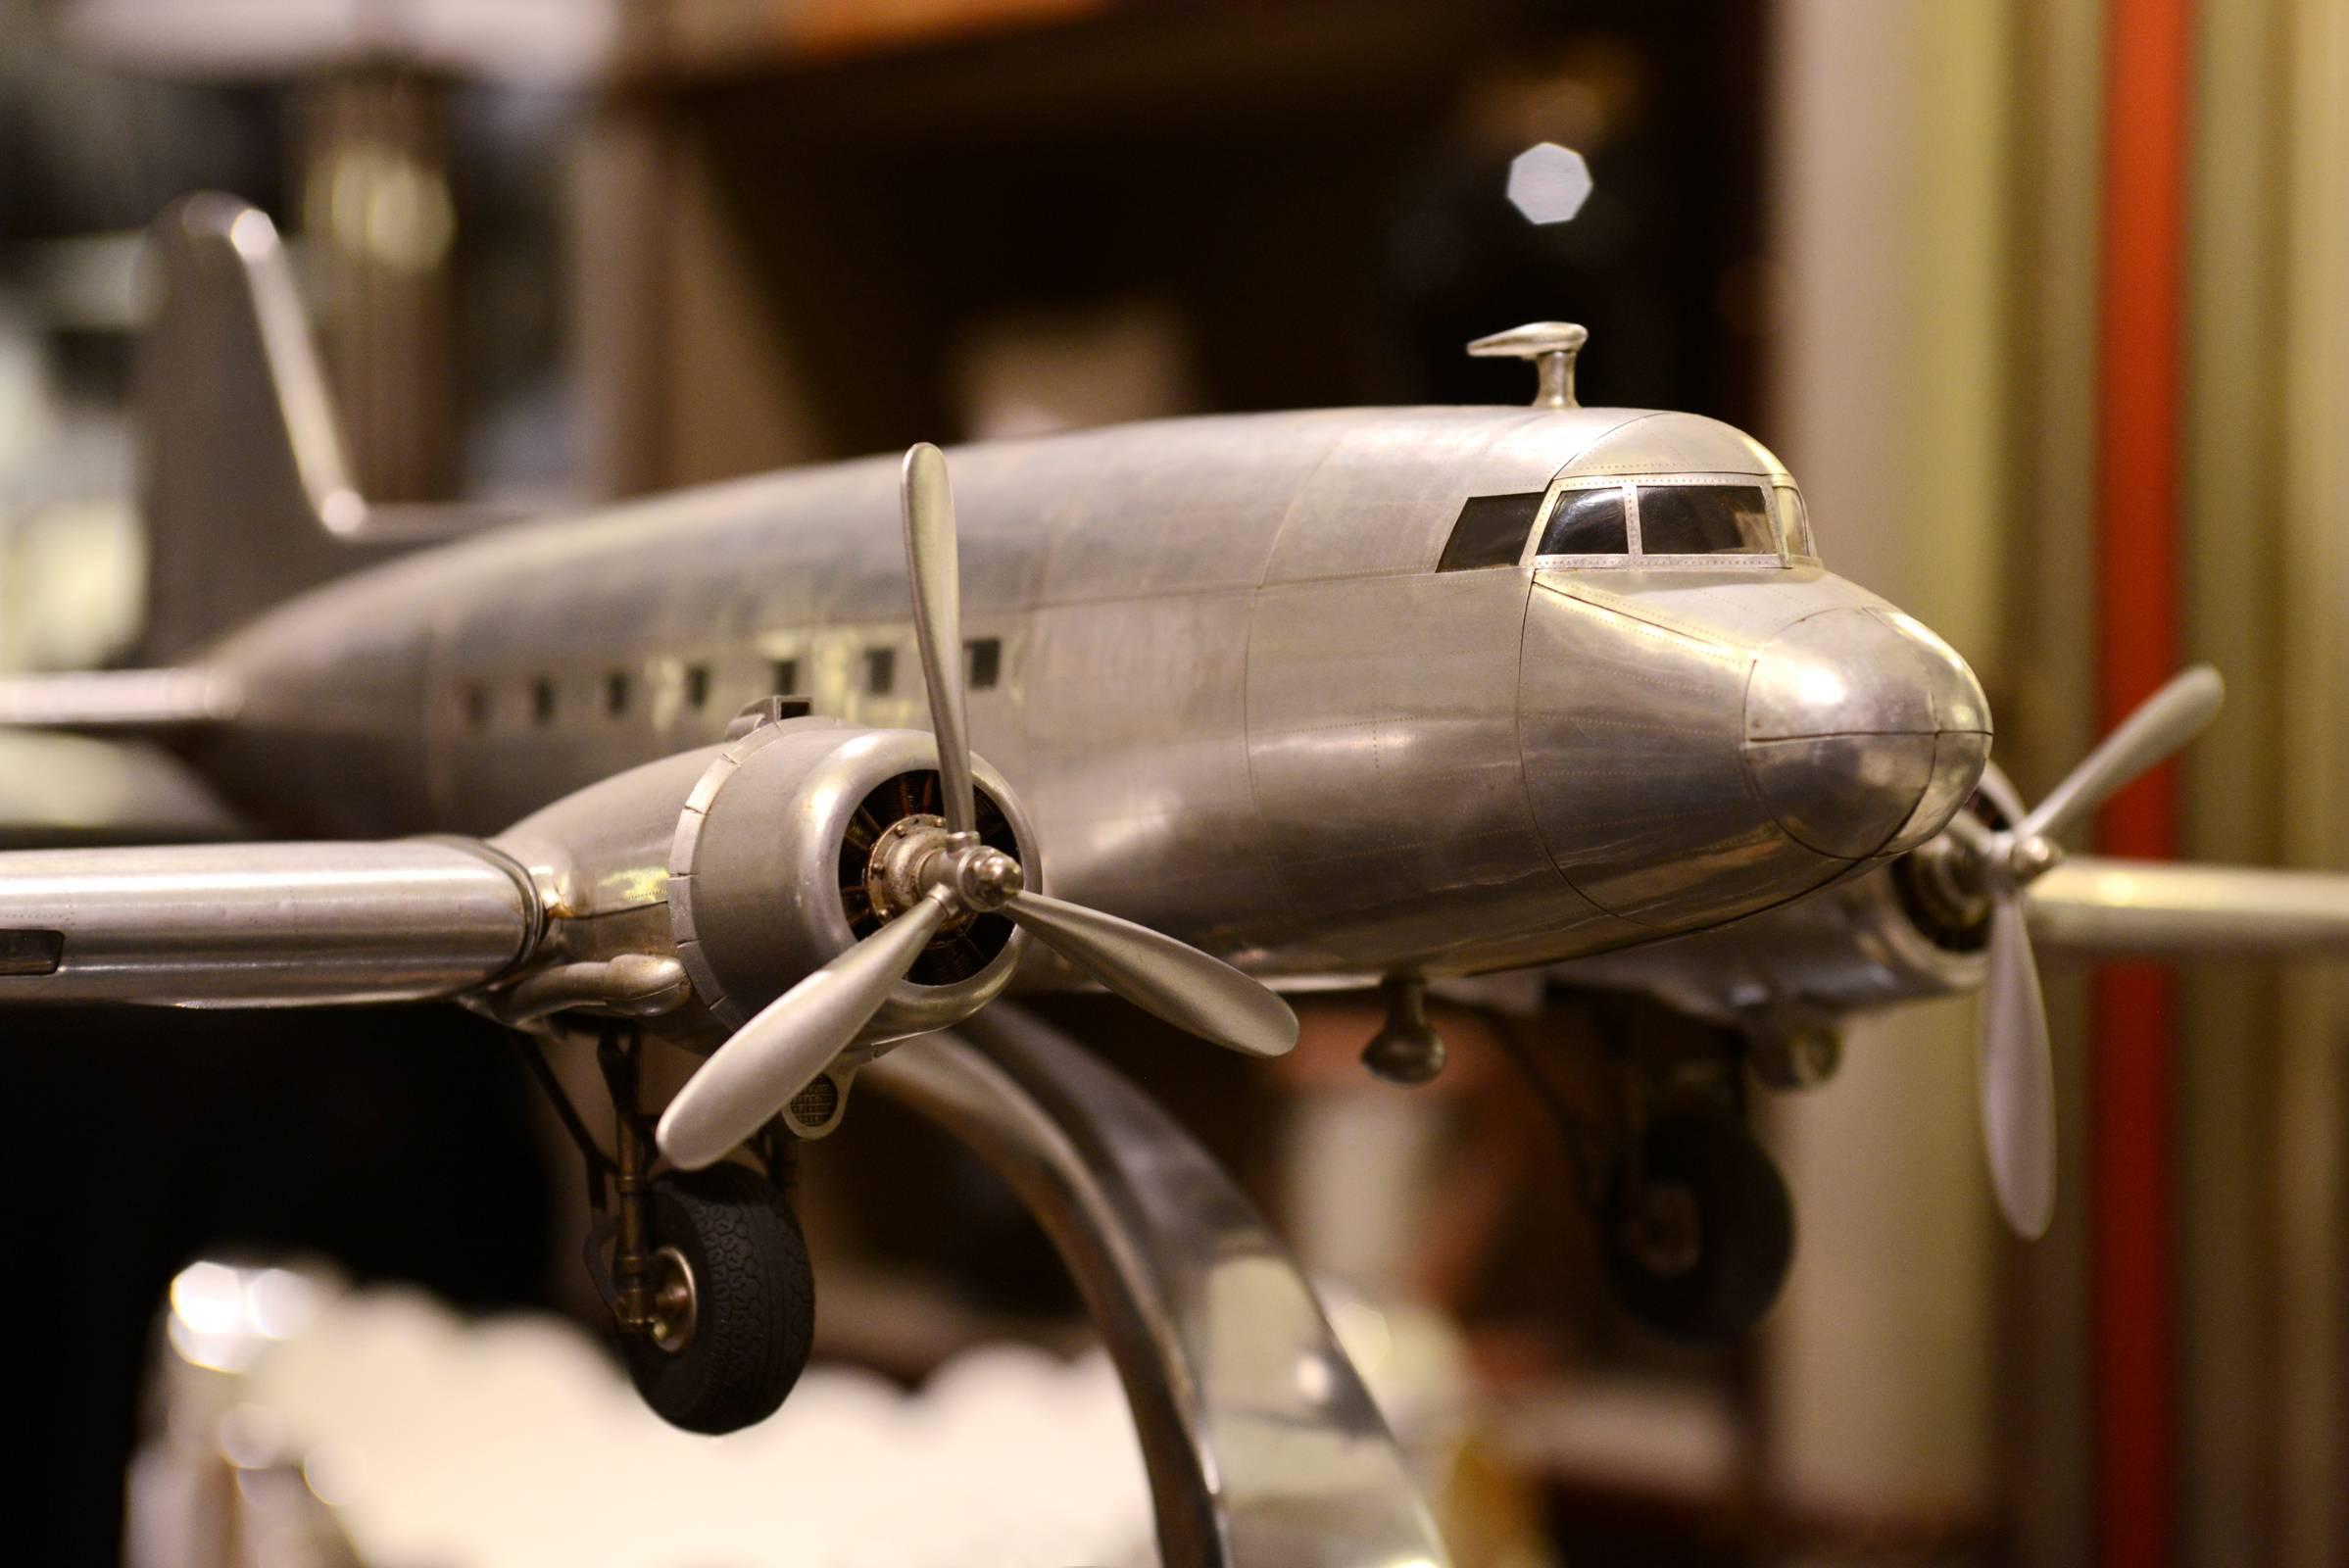 DC-3, Dakota Flugzeug verkleinertes Modell Maßstabsmodell.
Handgefertigt in Alufolie,
mit gravierten Metallnieten, 1936.
.